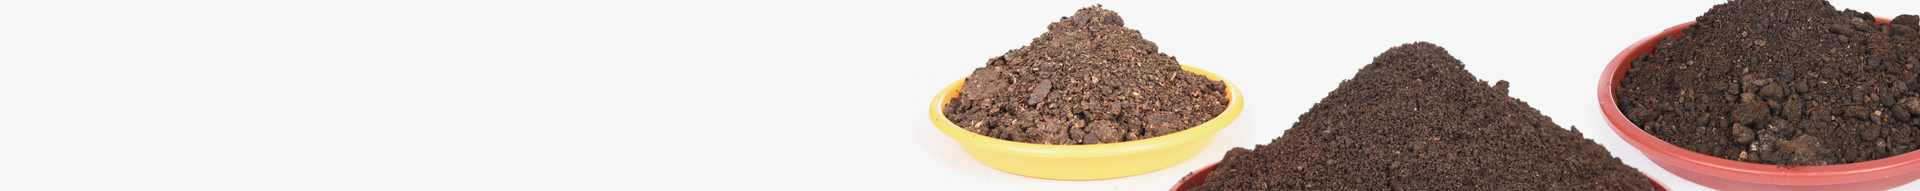 Potting soil Mix -25kg